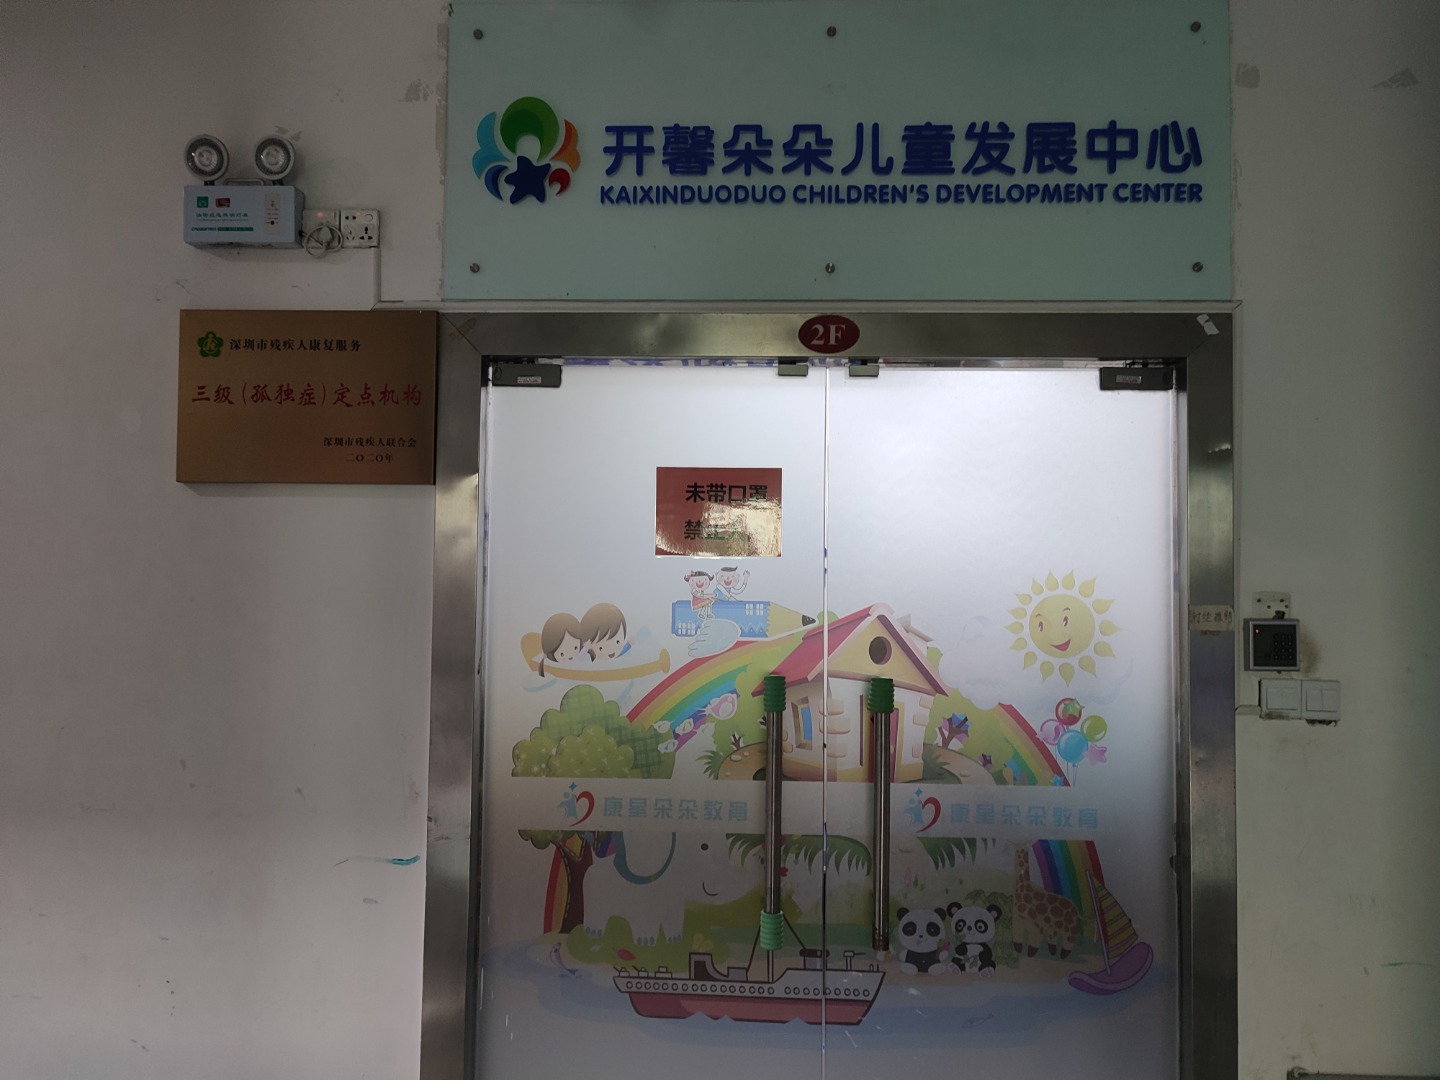 深圳市开馨朵朵儿童发展有限公司